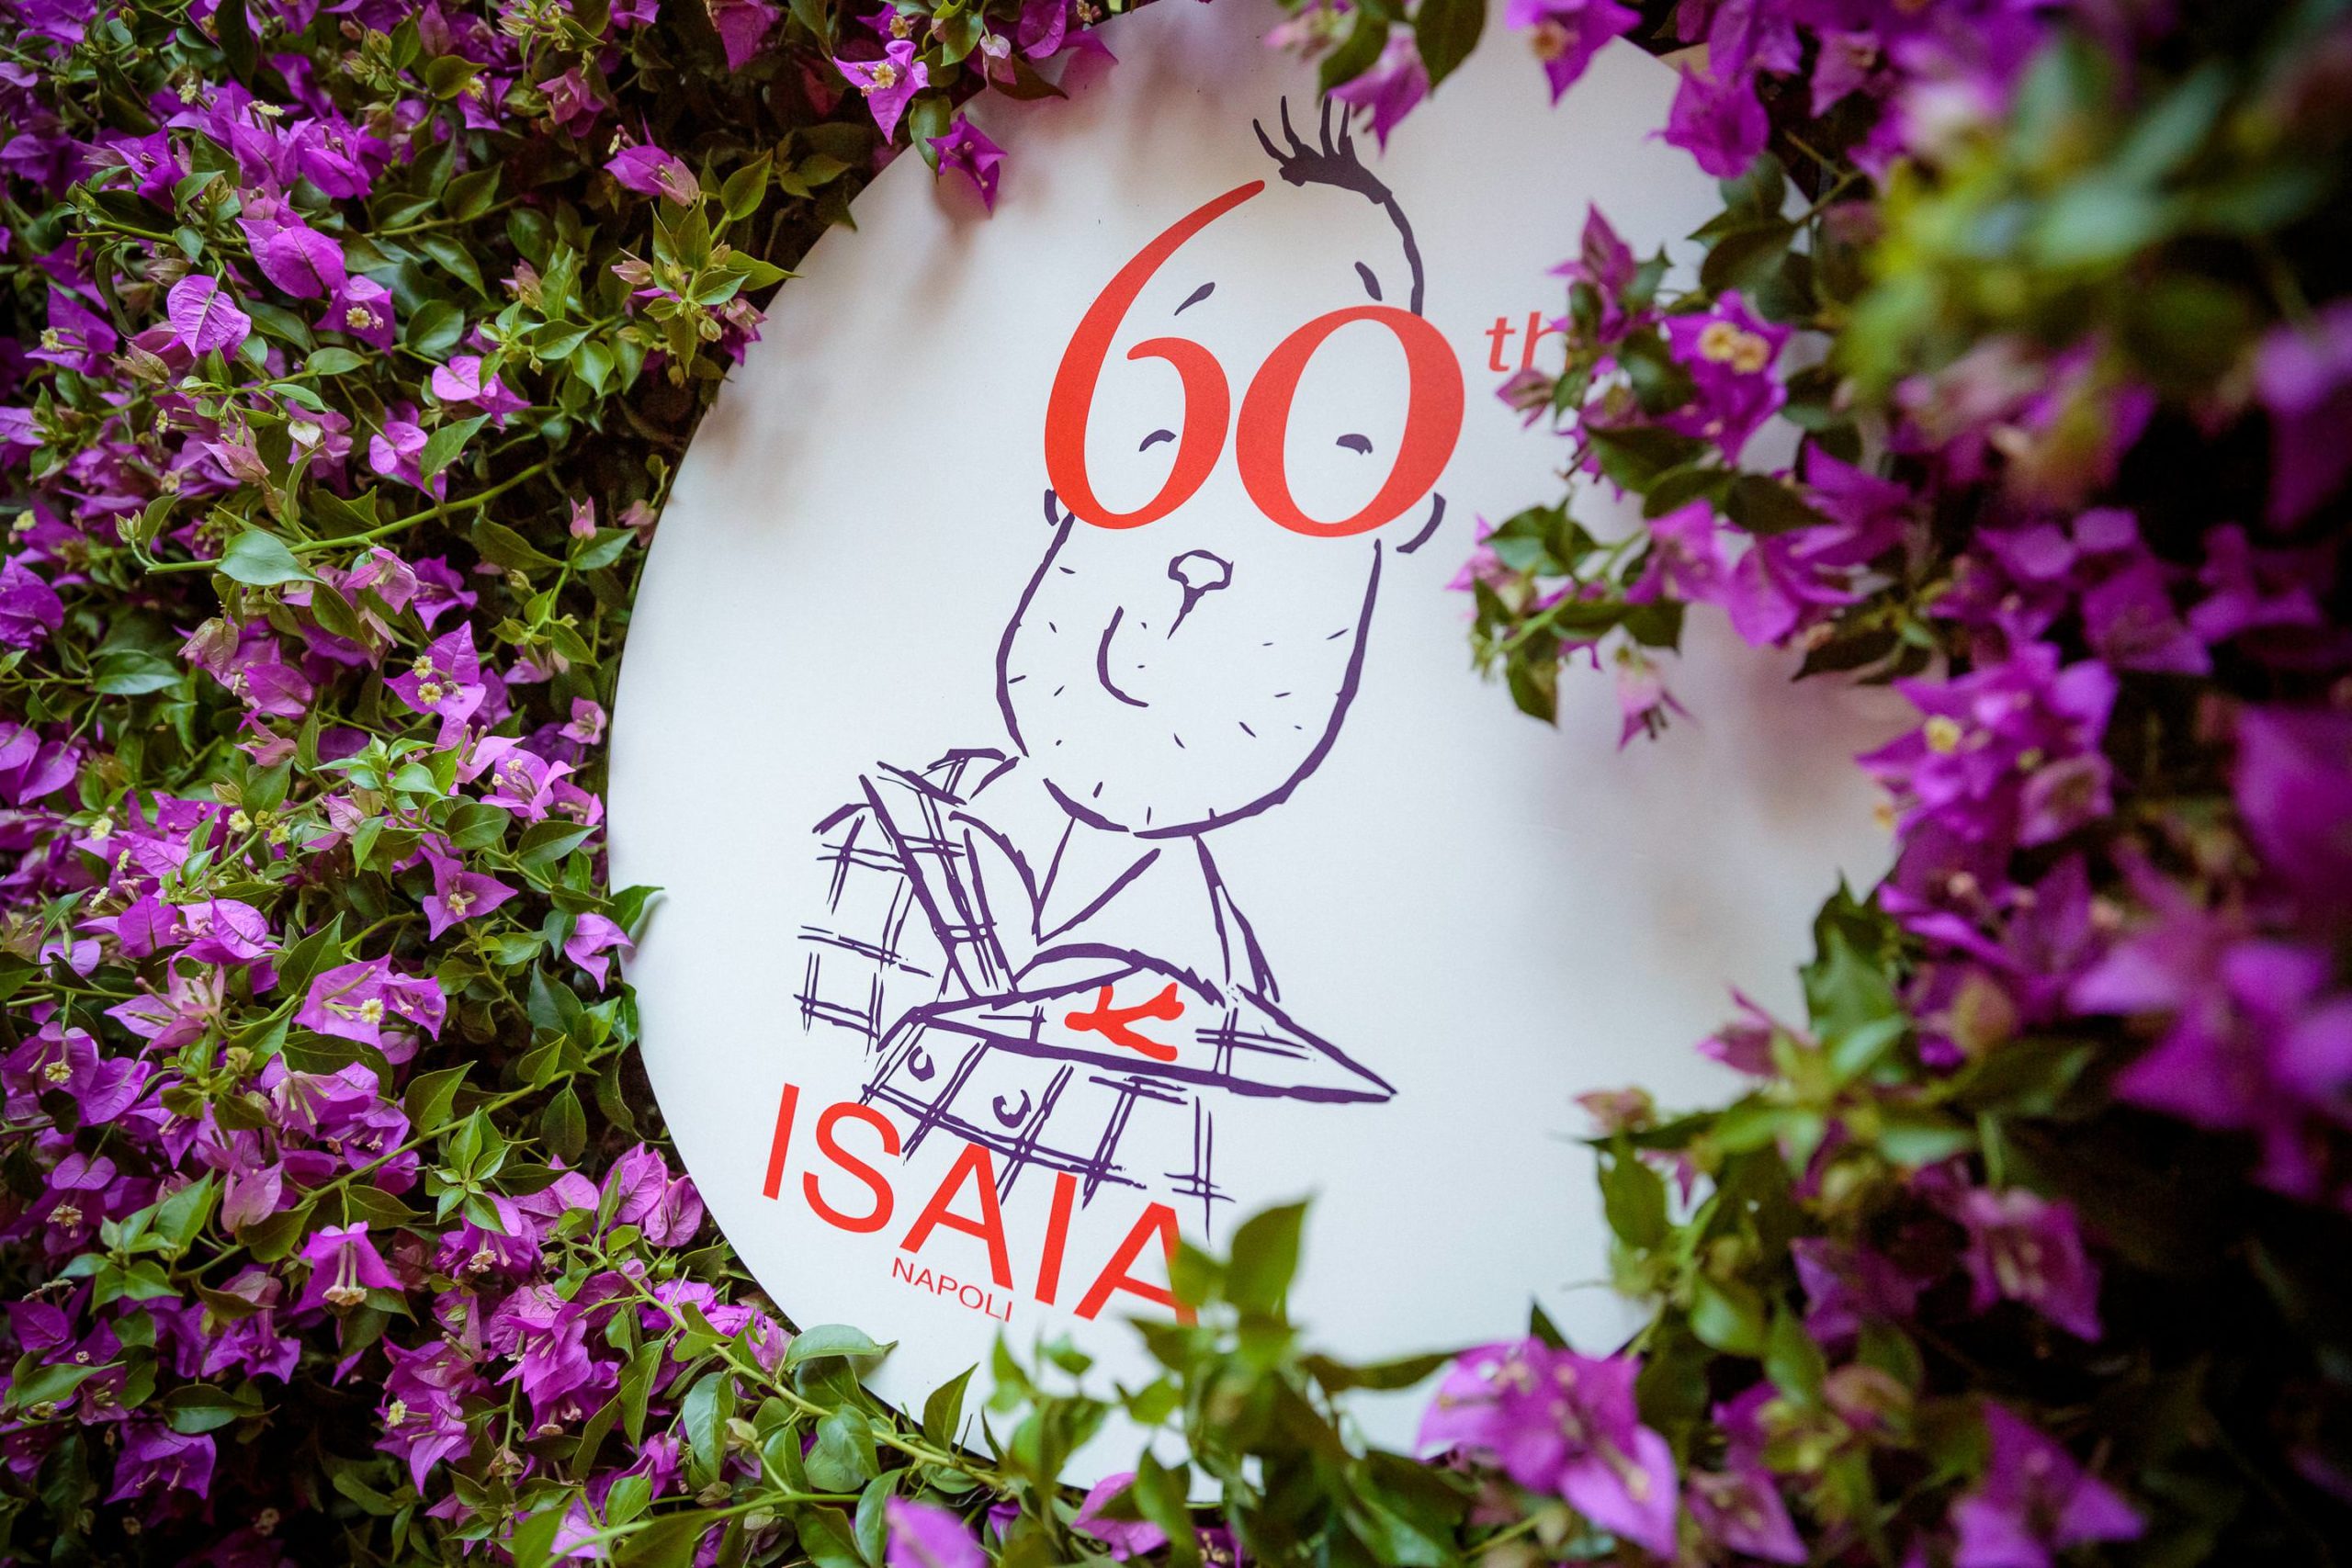 Isaia Celebrates 60 Years in Milan